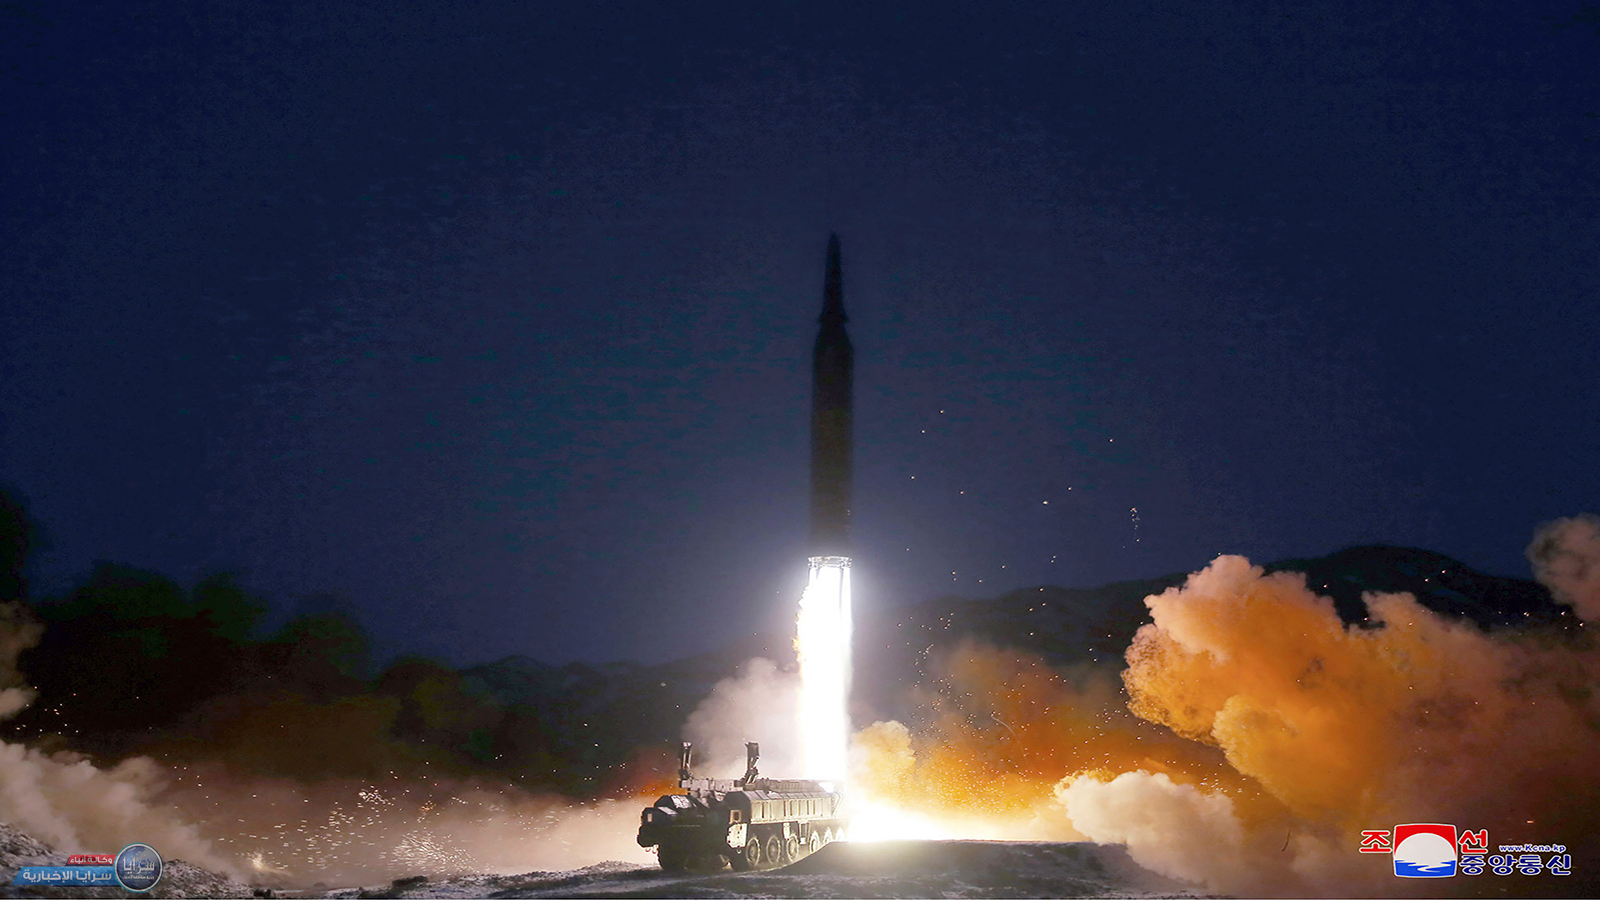 كوريا الشمالية تردّ على "استفزاز" واشنطن بإطلاق صاروخين باليستيين